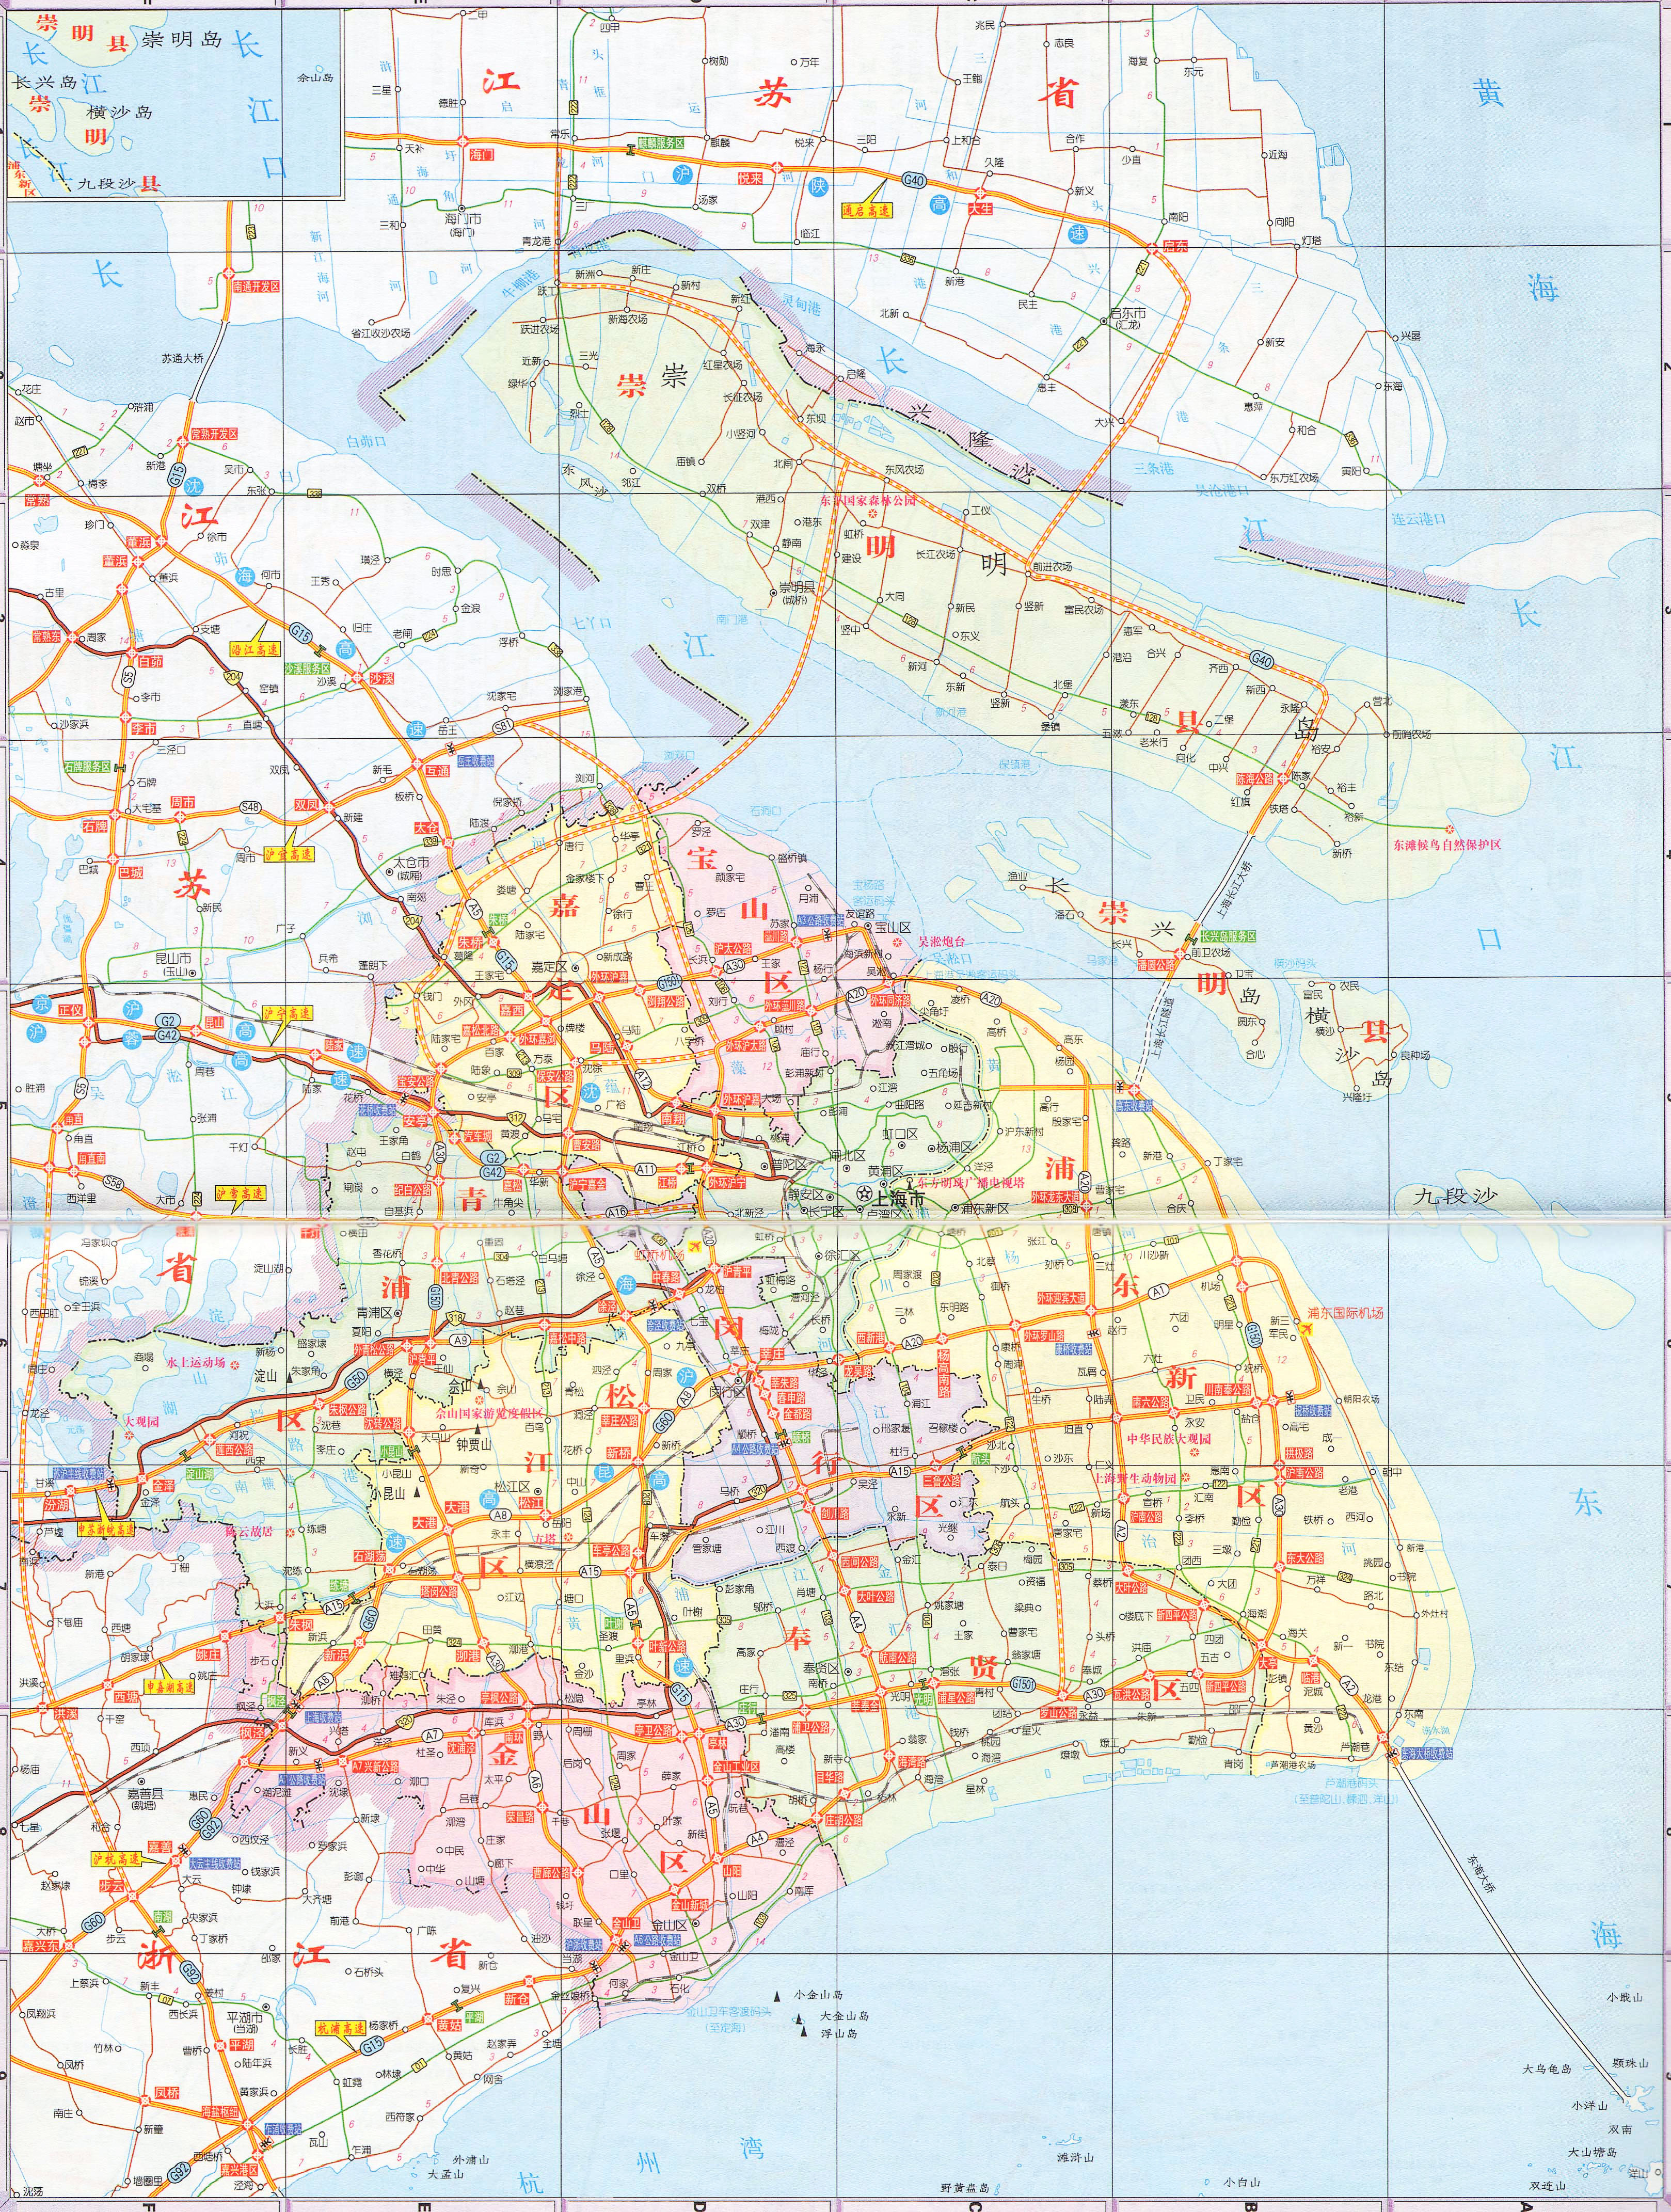 宁夏  新疆  青海  西藏  香港  澳门  台湾 上一幅地图: 上海市区